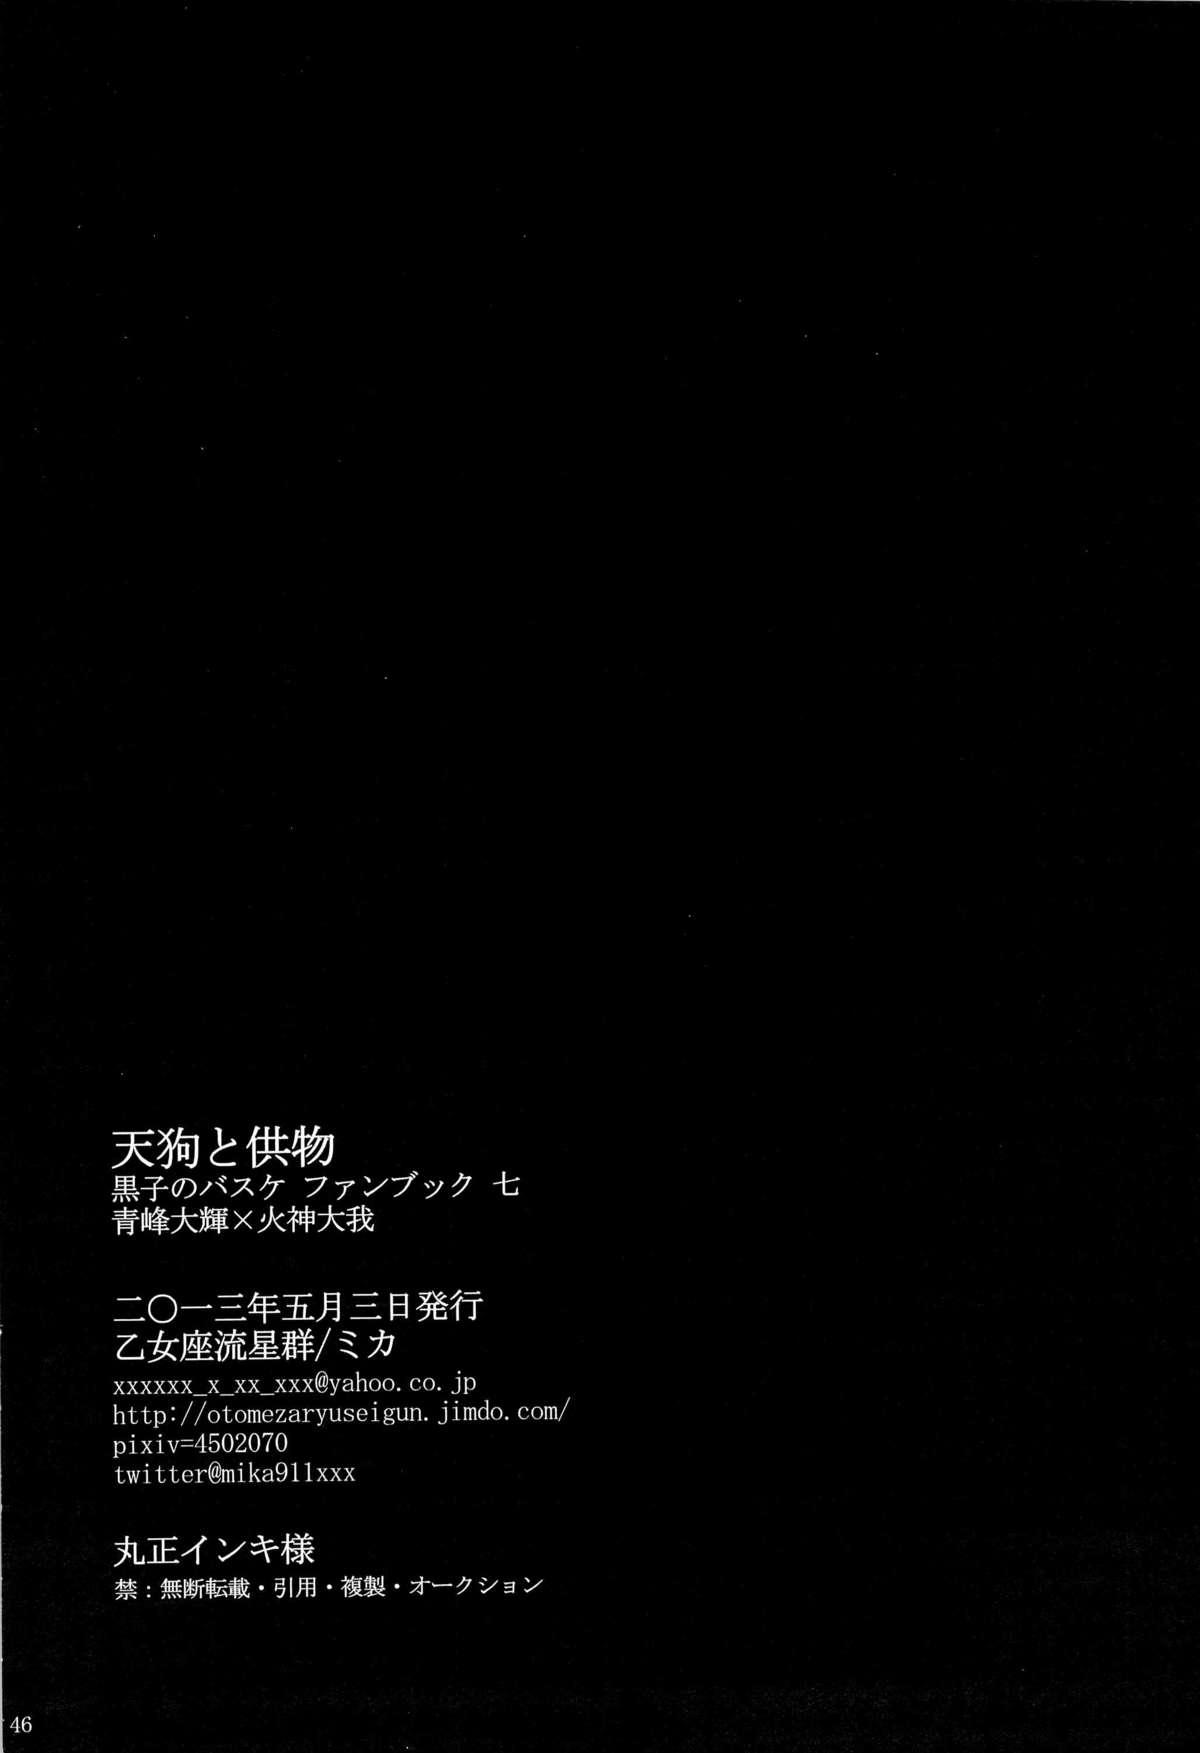 Exhib Tengu to Kumotsu - Kuroko no basuke Couples - Page 46